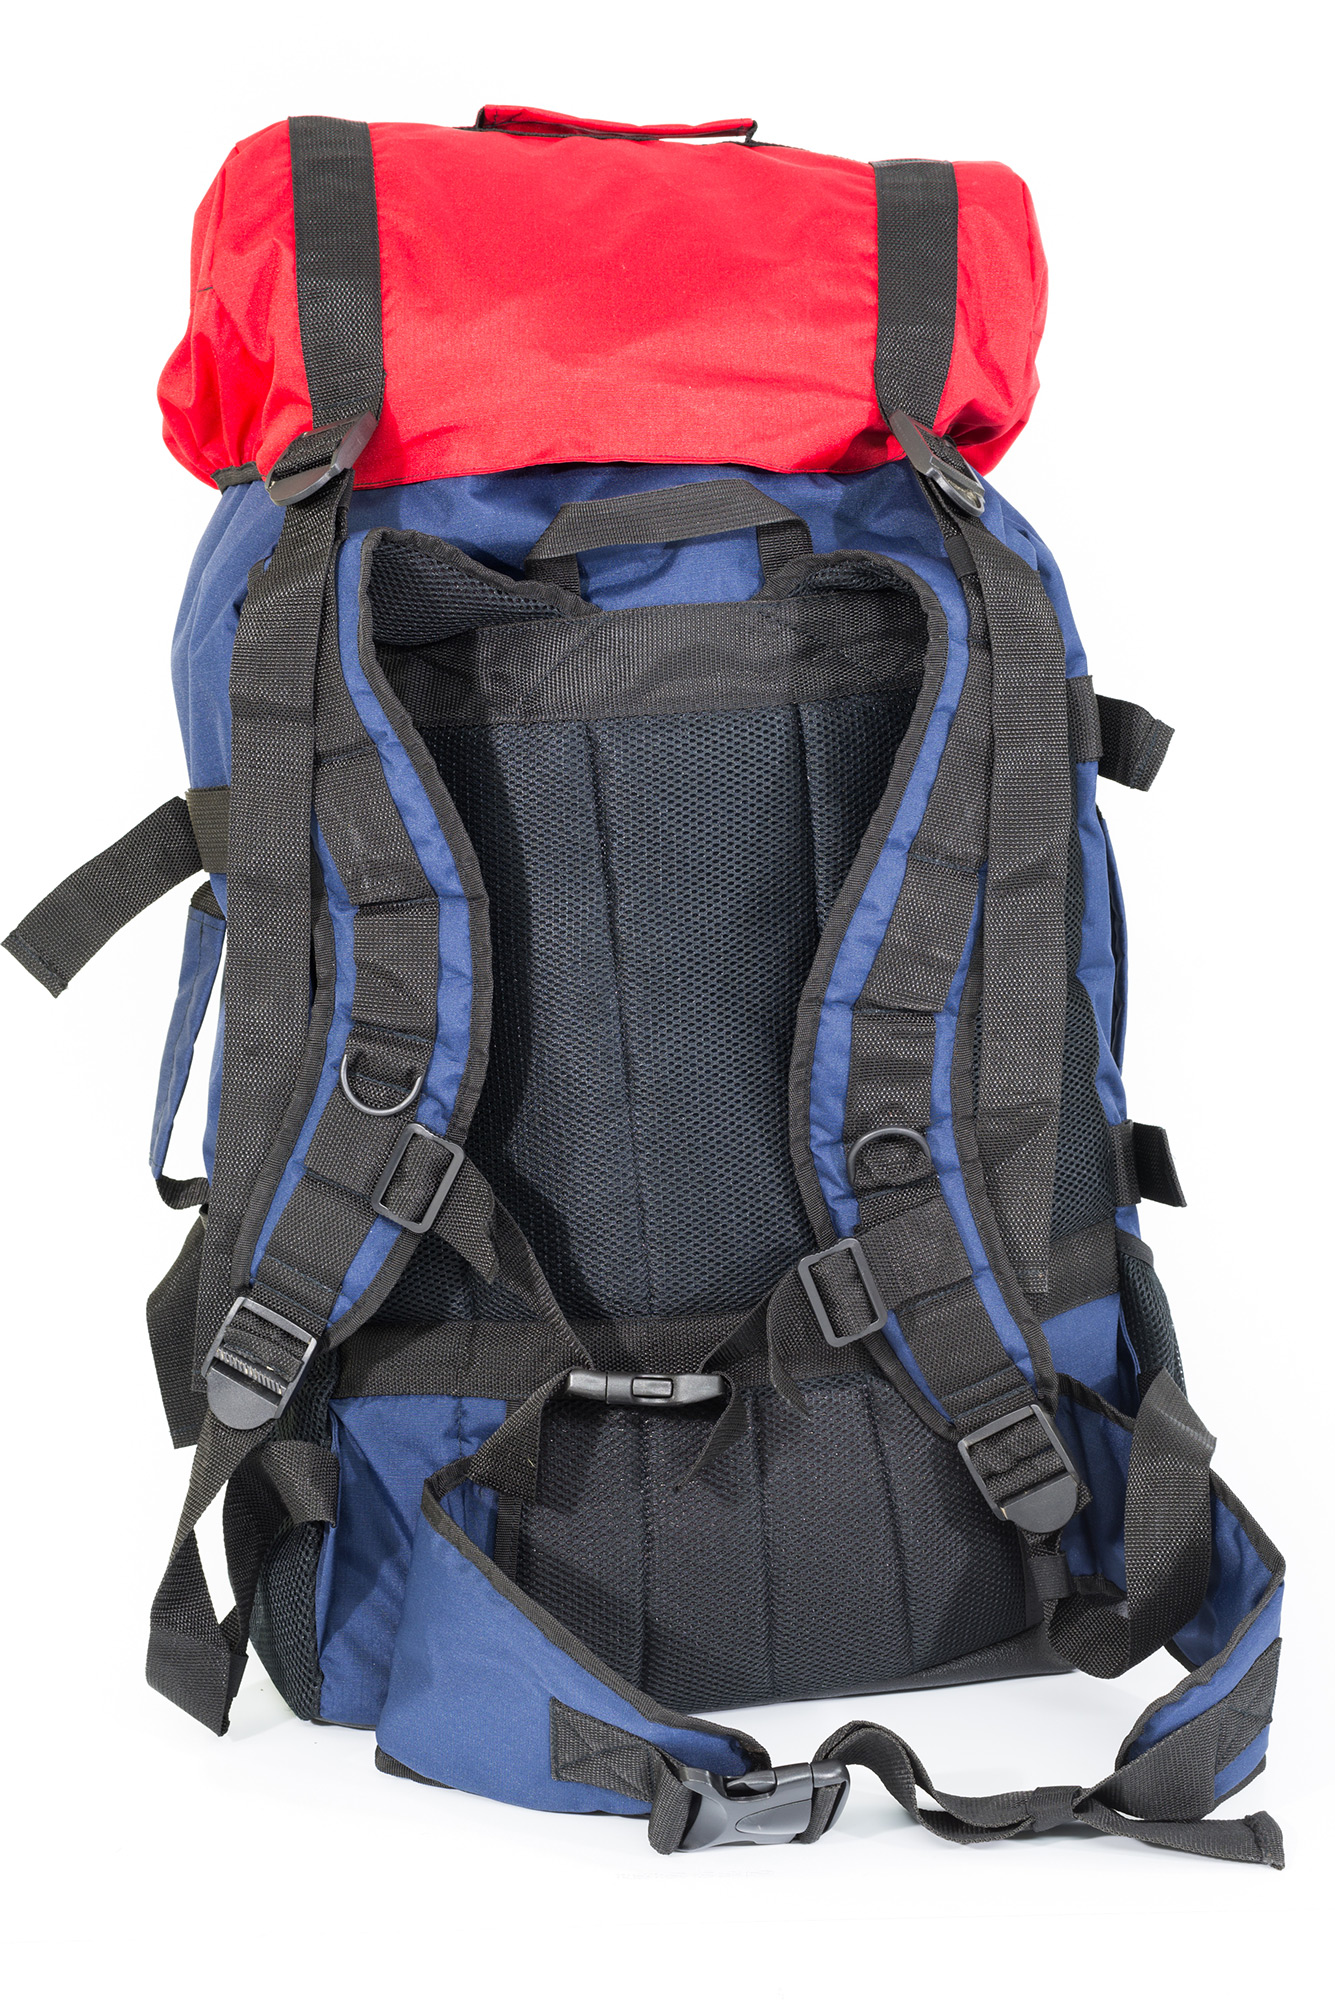 Рюкзак спасателя, Большой туристический рюкзак для дальних переходов. Имеет внешние объёмные карманы. Поясная поддержка, купить, империал, швейное производство, сумки на заказ, сумки для военных, военторг спб